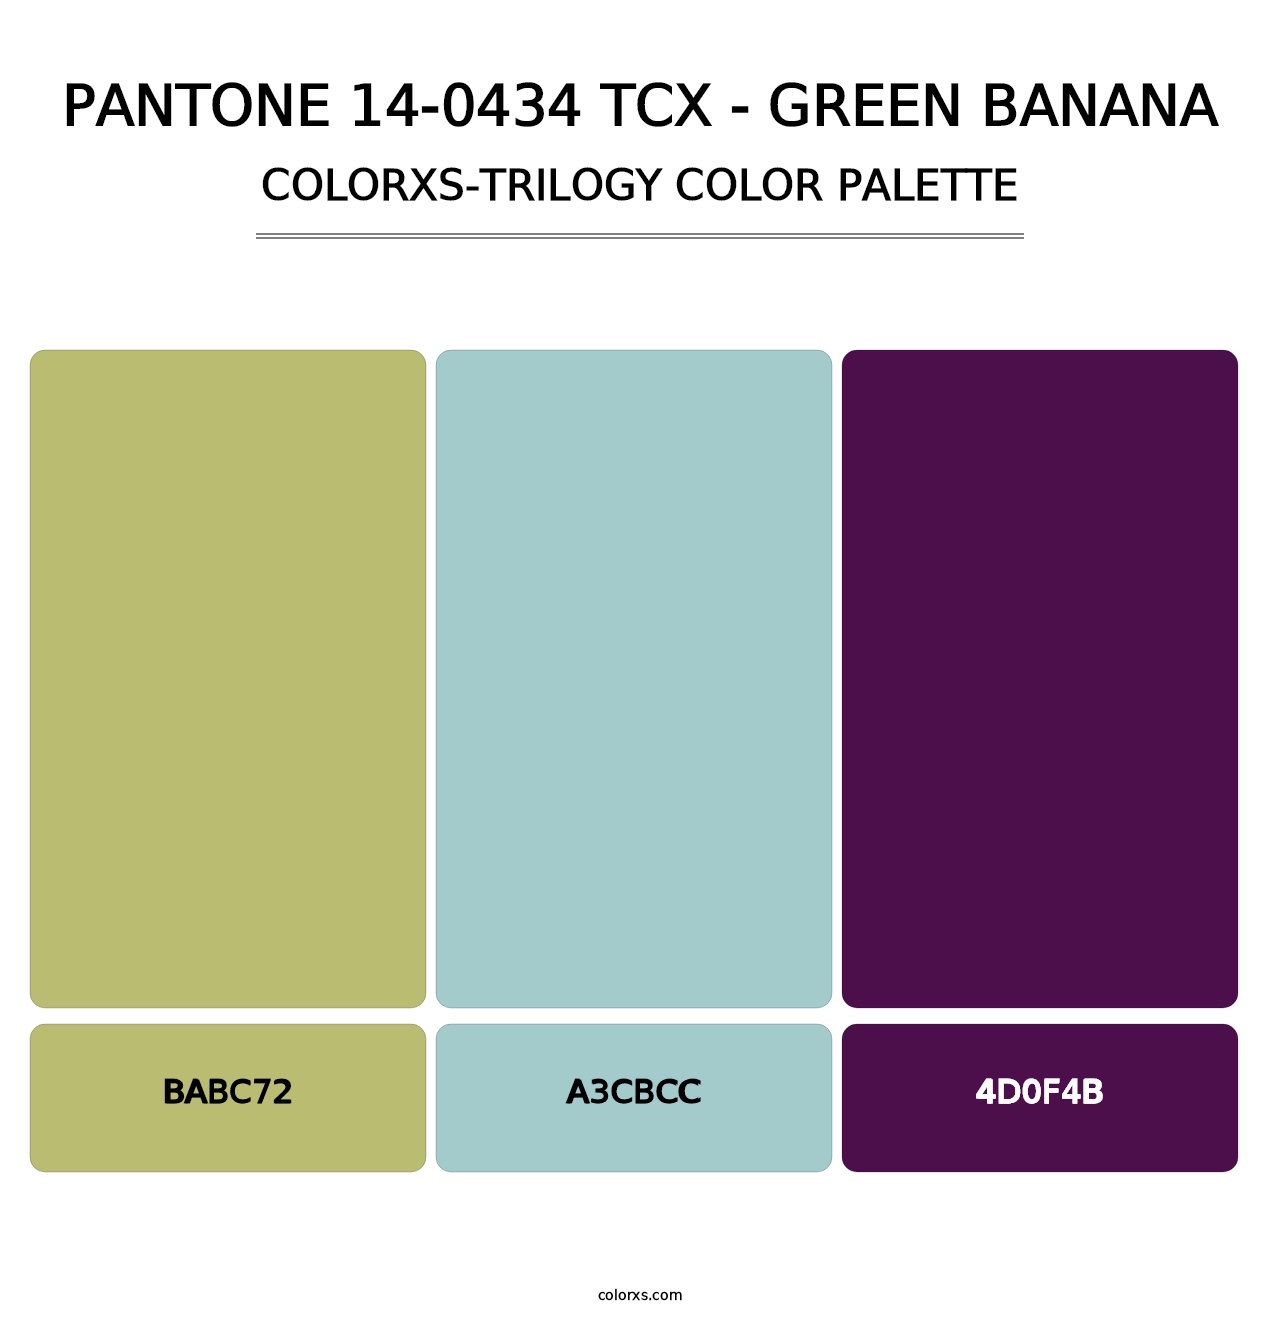 PANTONE 14-0434 TCX - Green Banana - Colorxs Trilogy Palette